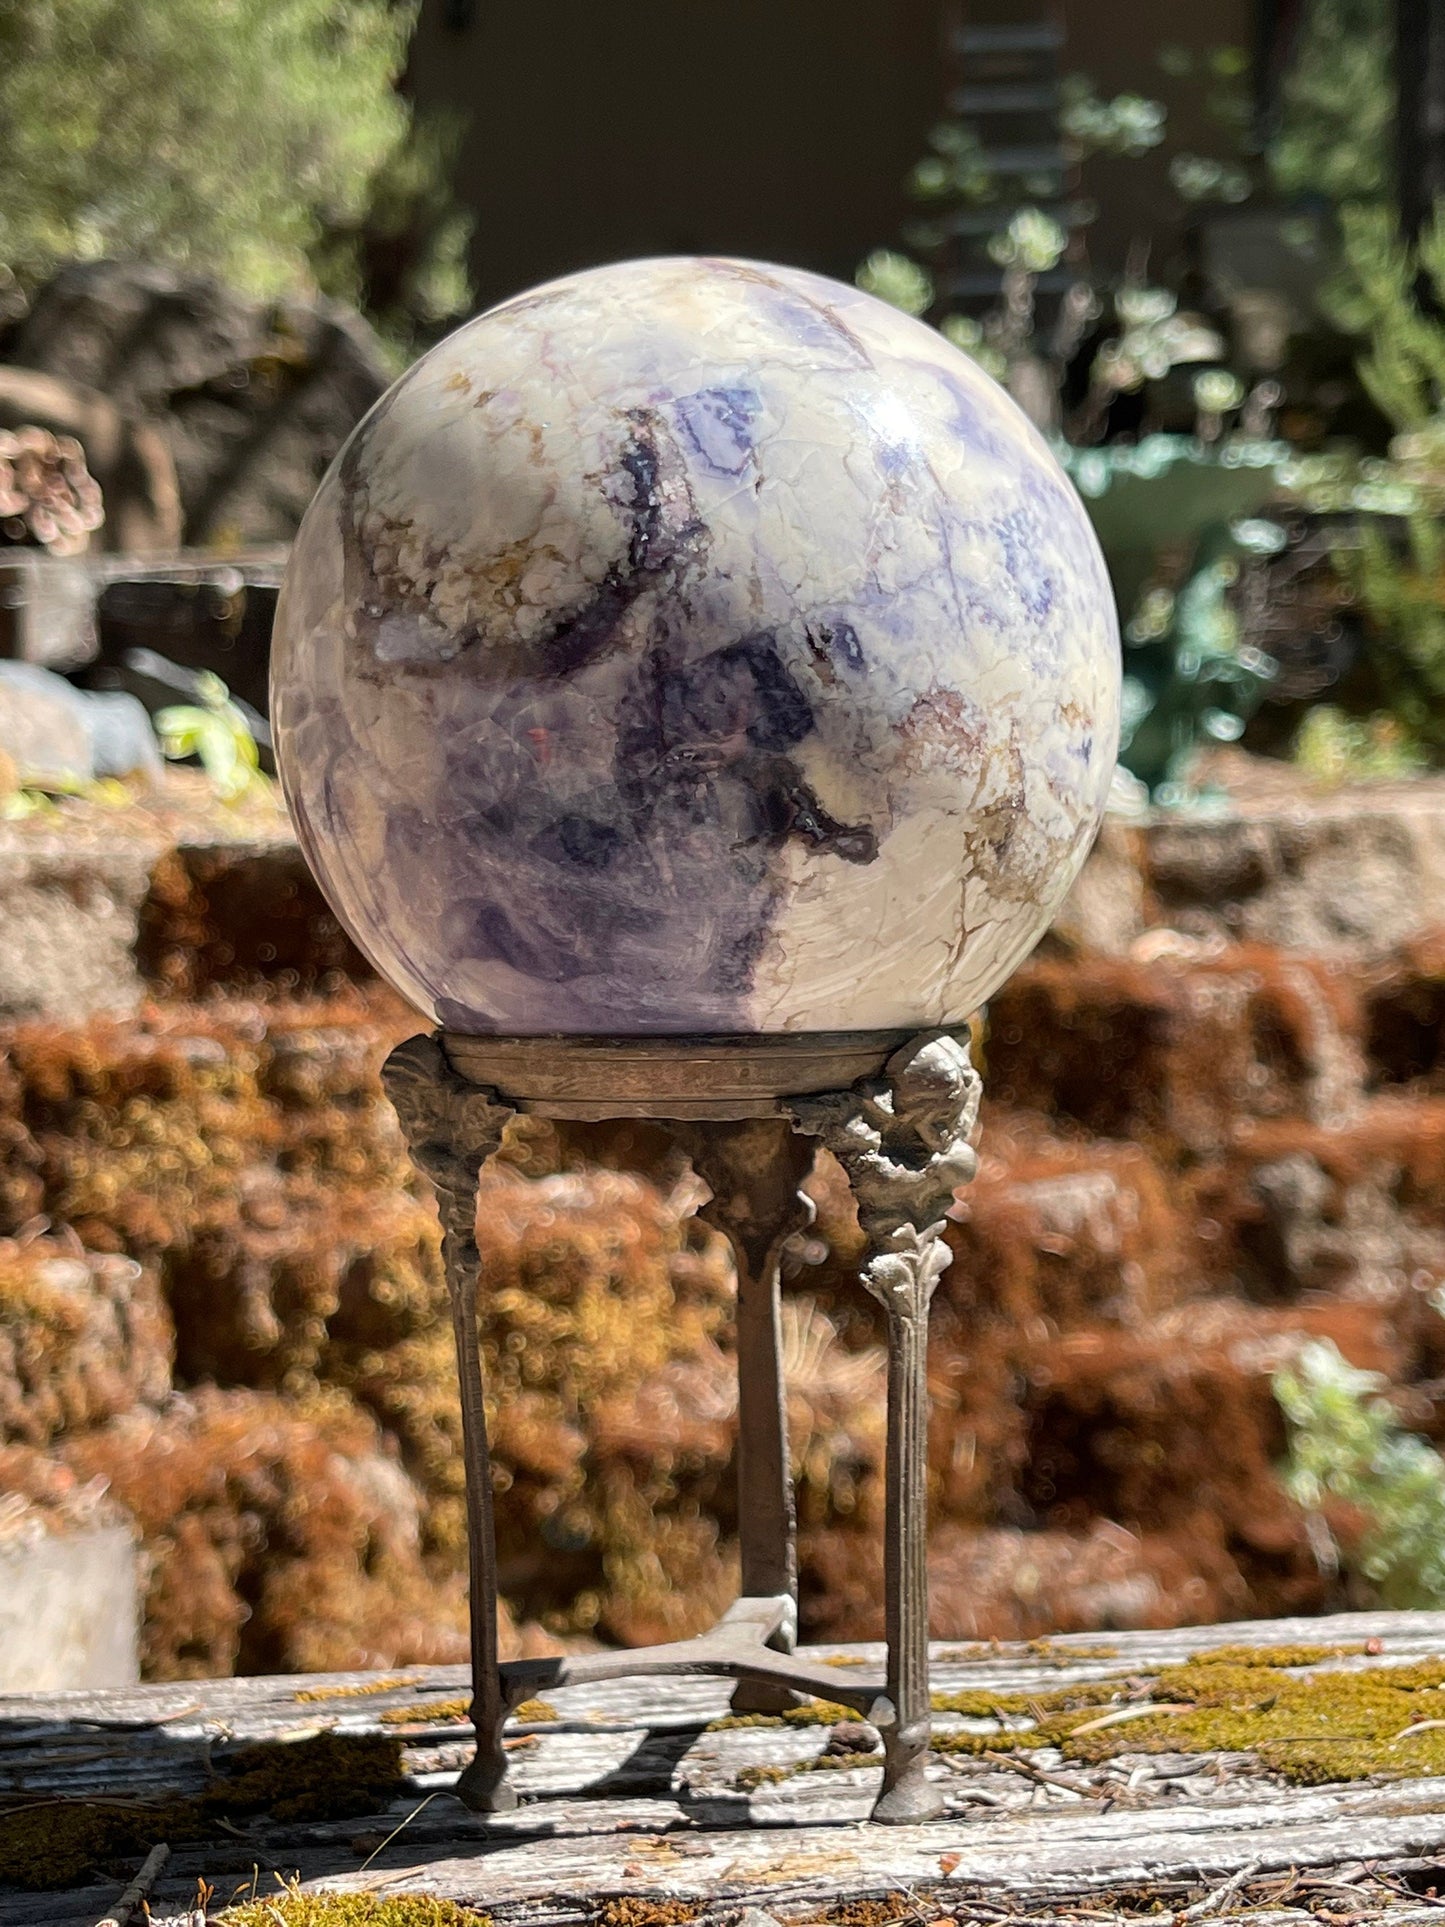 Bertrandite "Tiffany Stone" Sphere, Spor Mountain, Utah, Opalized Fluorite